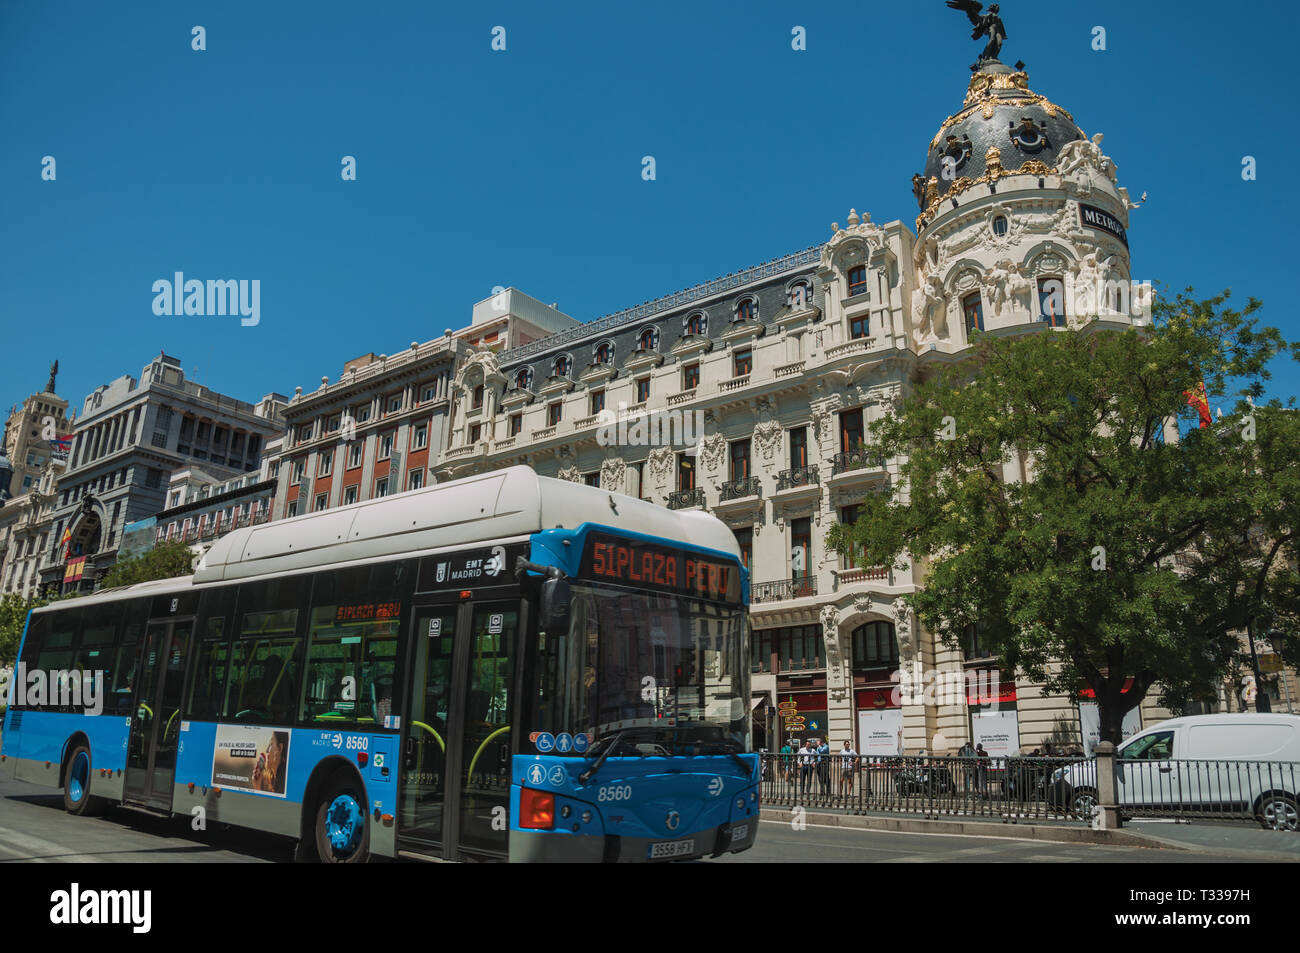 Les vieux bâtiments sur l'animée rue Alcala avec les gens et d'autobus, dans une journée ensoleillée à Madrid. Capitale de l'Espagne avec dynamisme et vie culturelle intense. Banque D'Images